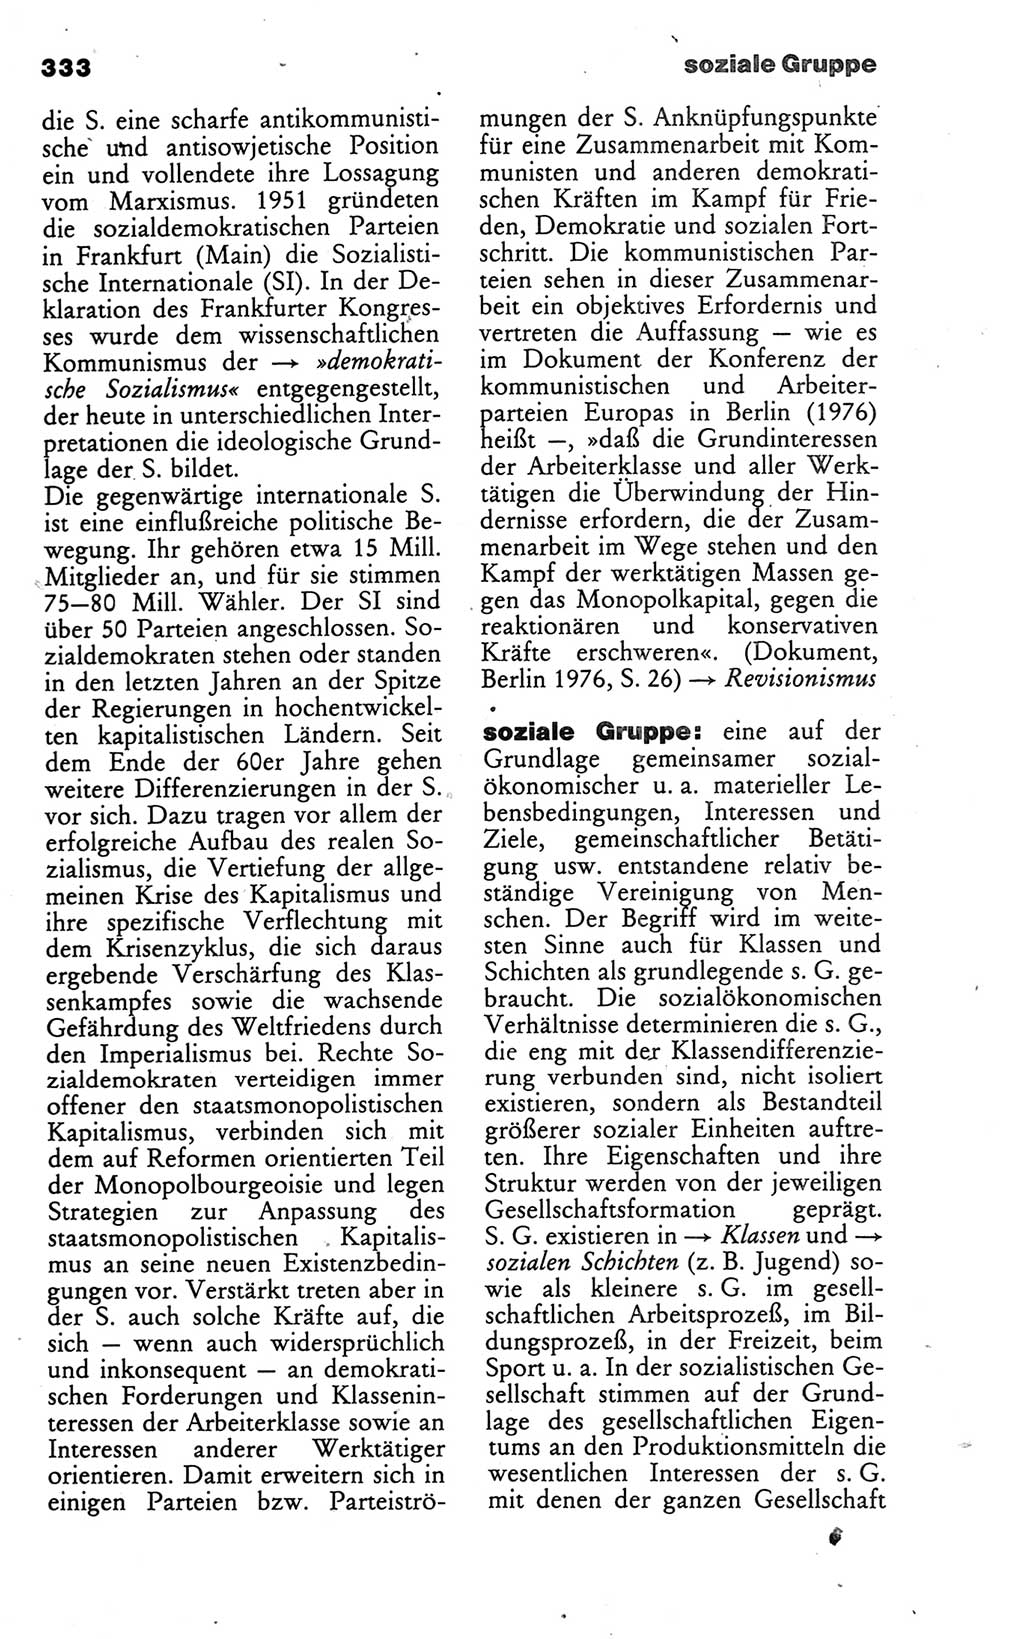 Wörterbuch des wissenschaftlichen Kommunismus [Deutsche Demokratische Republik (DDR)] 1986, Seite 333 (Wb. wiss. Komm. DDR 1986, S. 333)